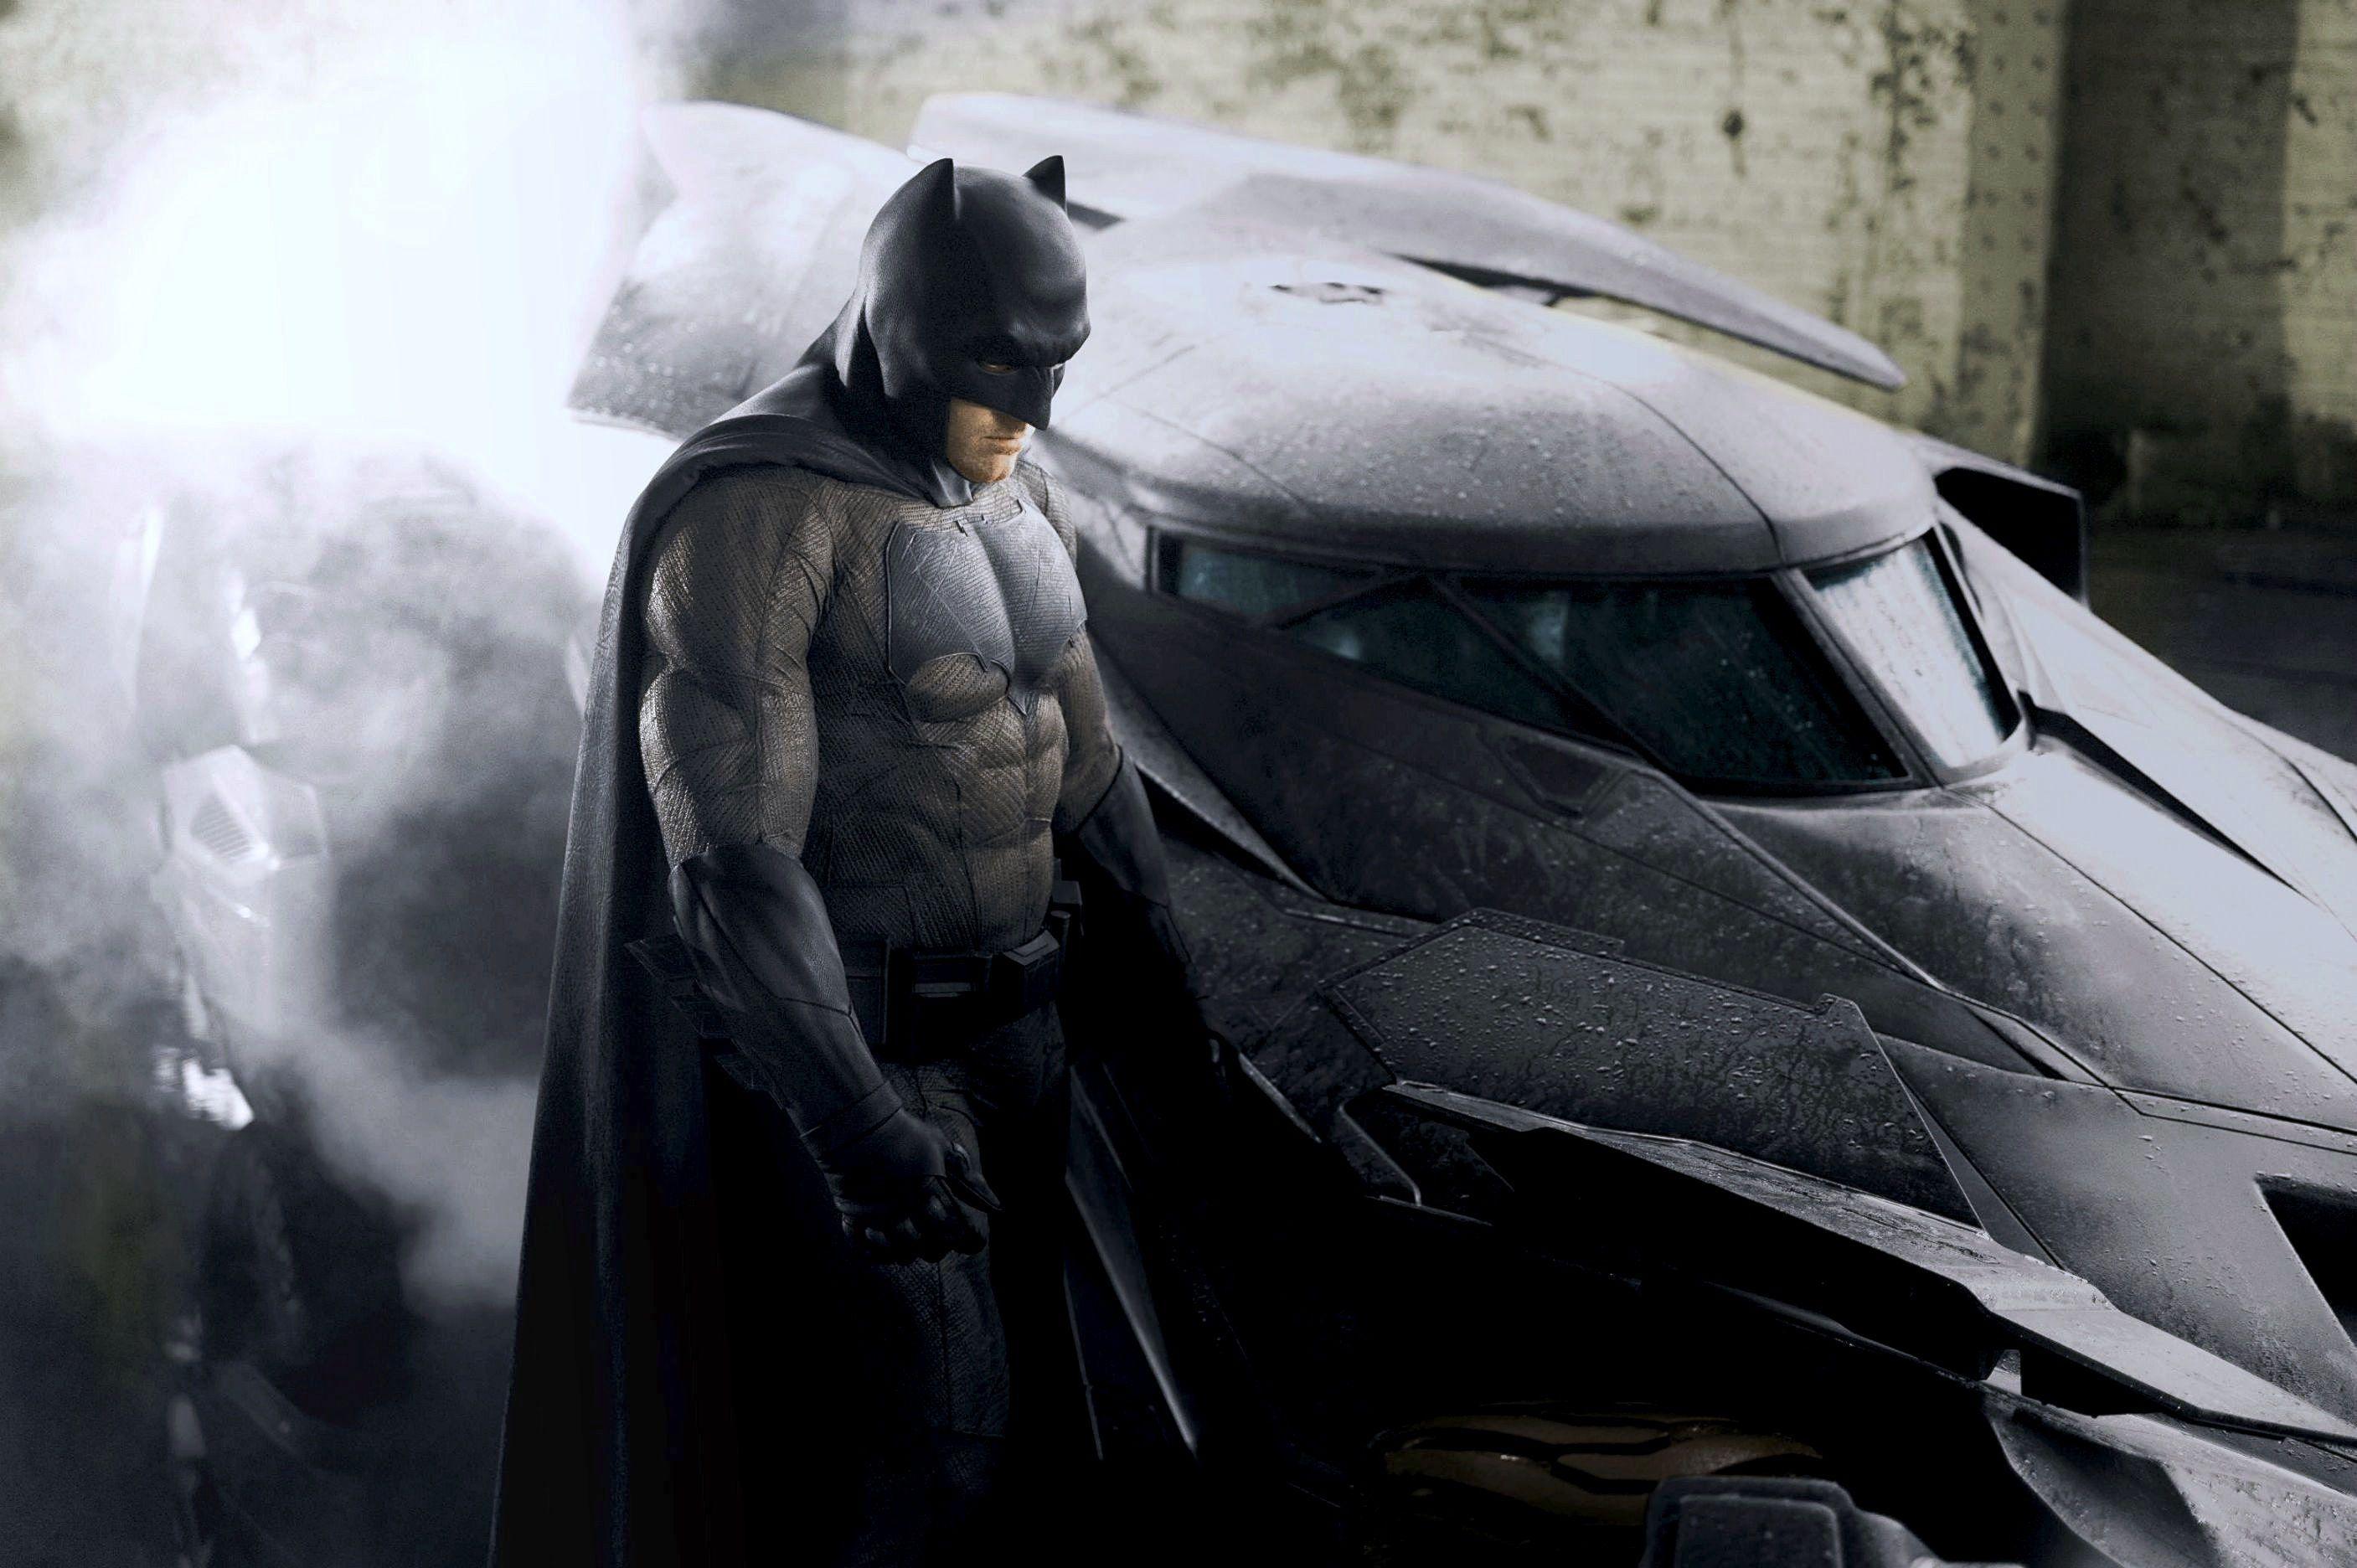 Batman v Superman: Dawn of Justice HD wallpaper free download